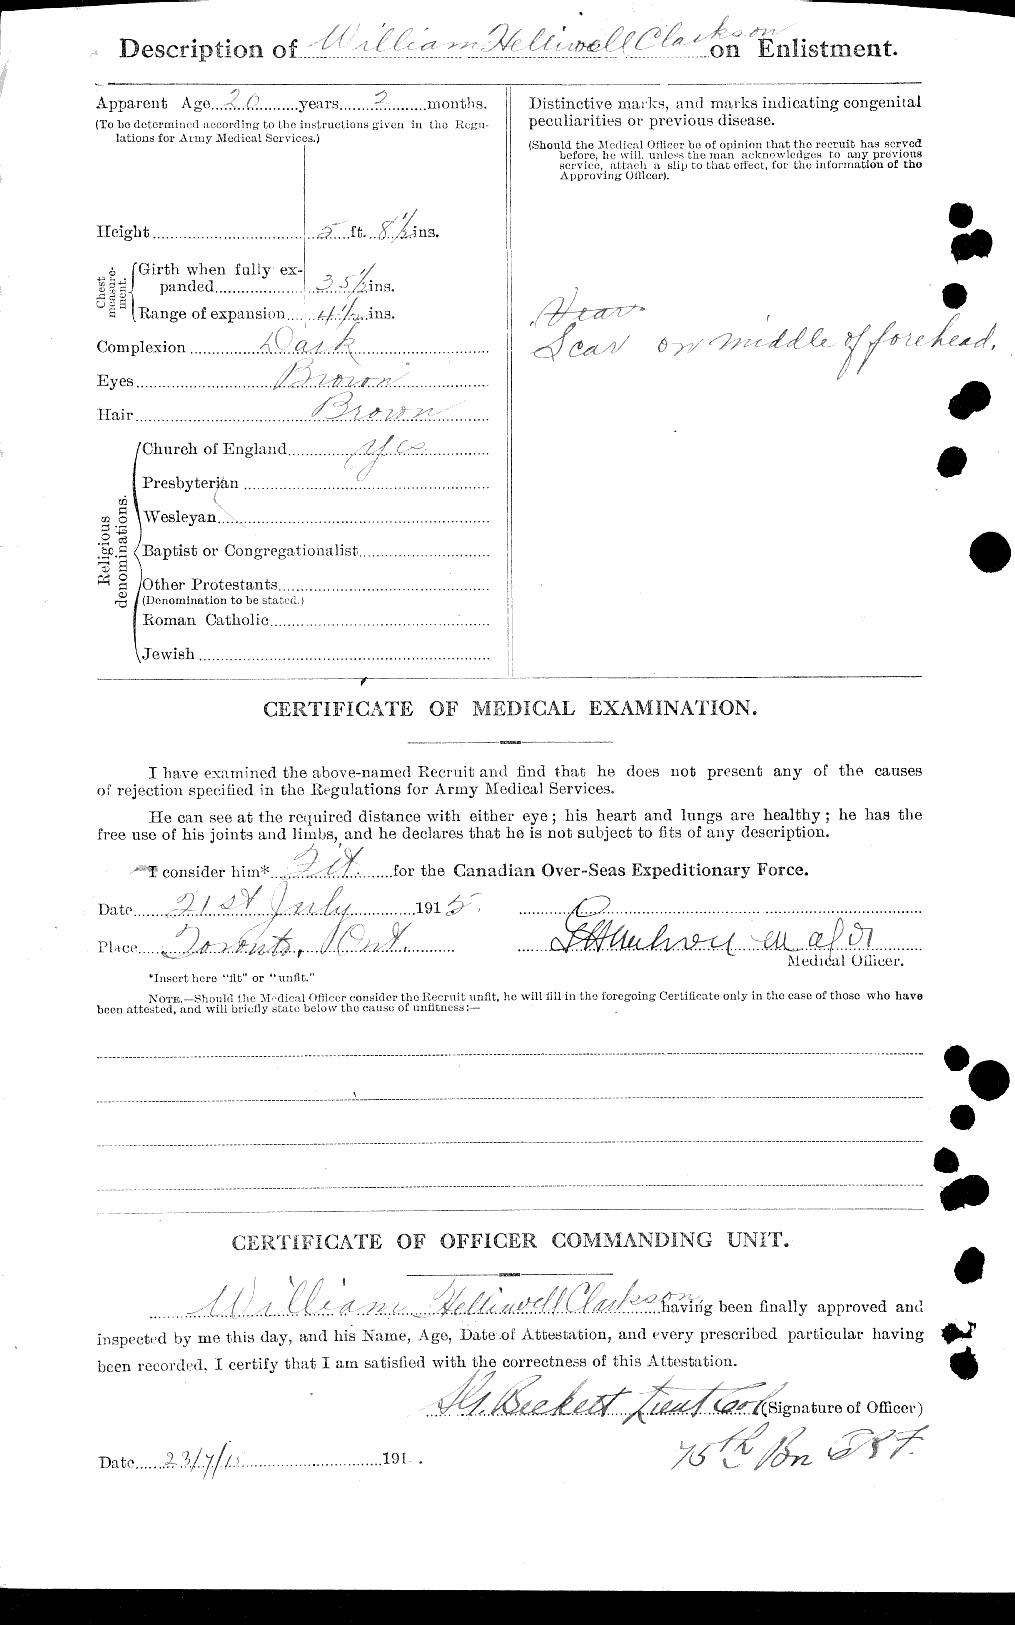 Dossiers du Personnel de la Première Guerre mondiale - CEC 019024b